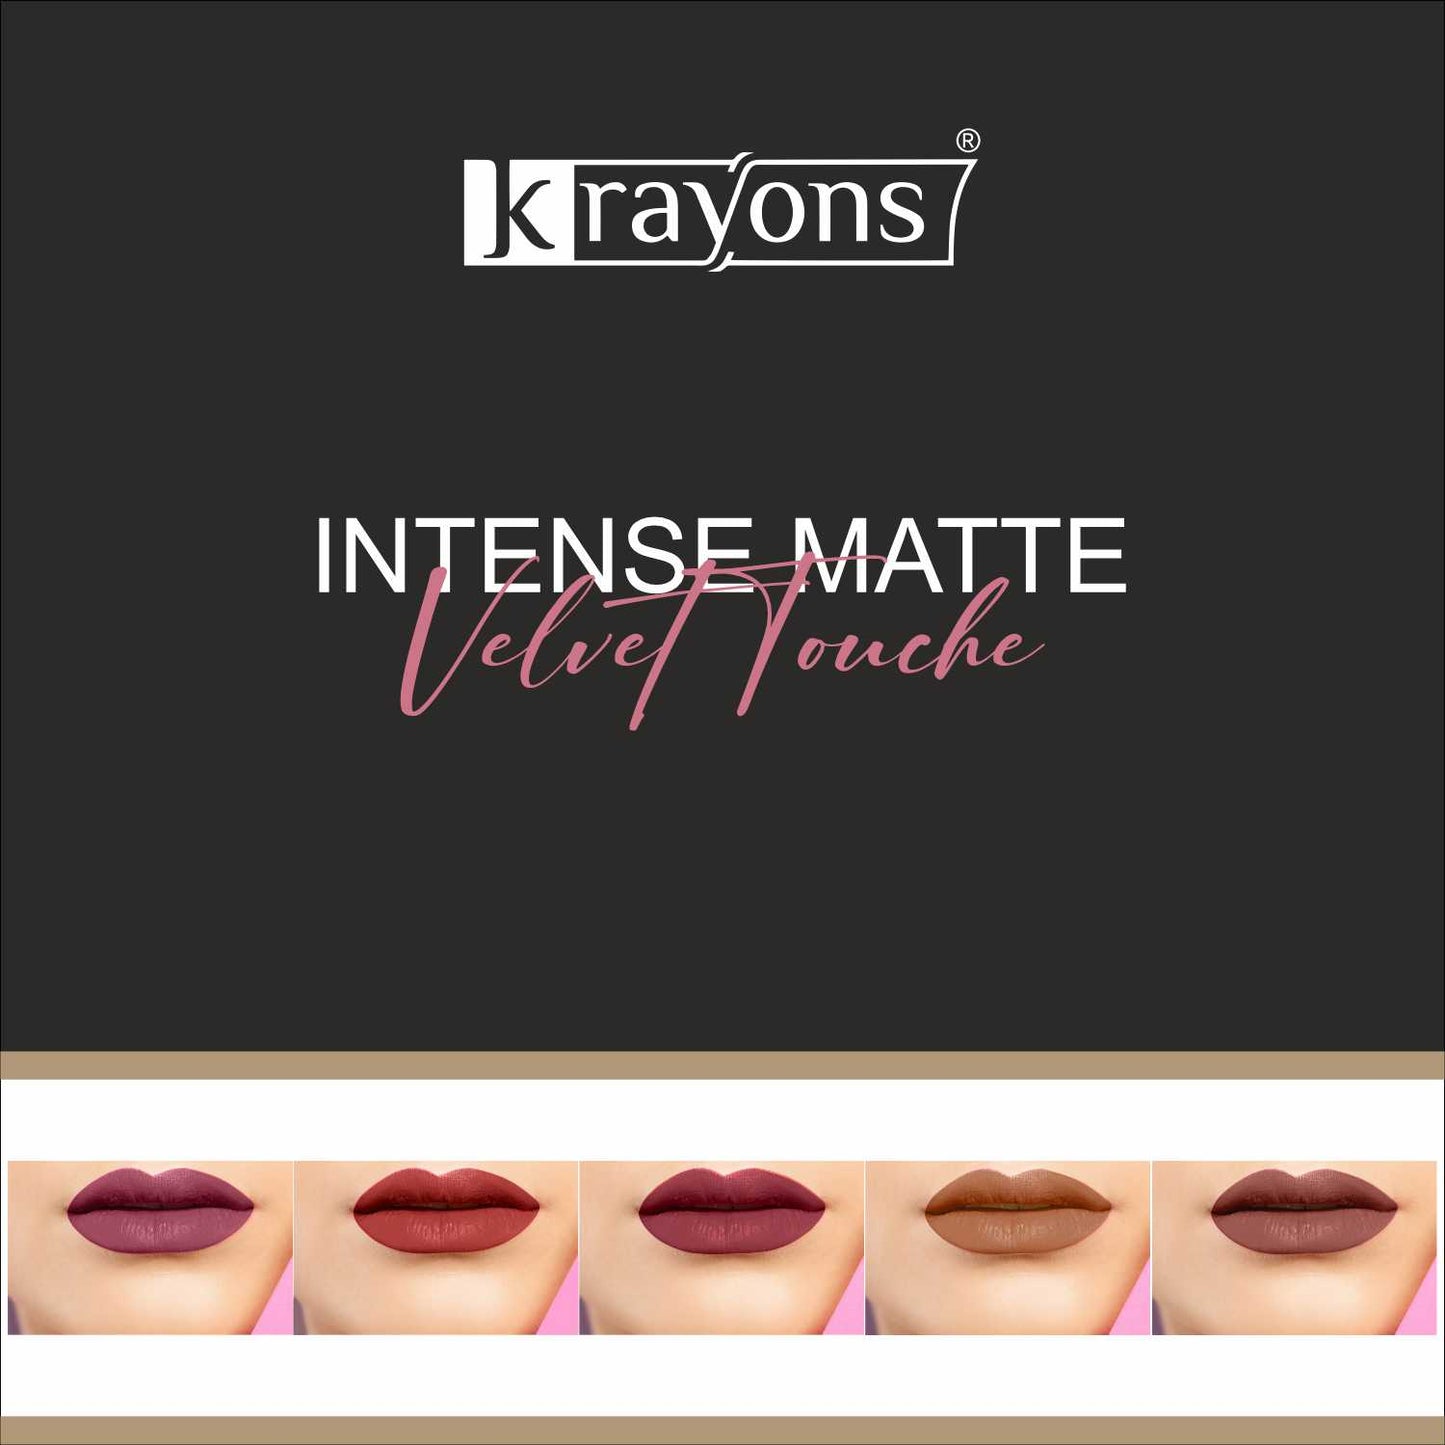 Krayons Intense Matte Lipstick, Waterproof, Longlasting, Multicolor, 3.5gm Each (Pack of 5)